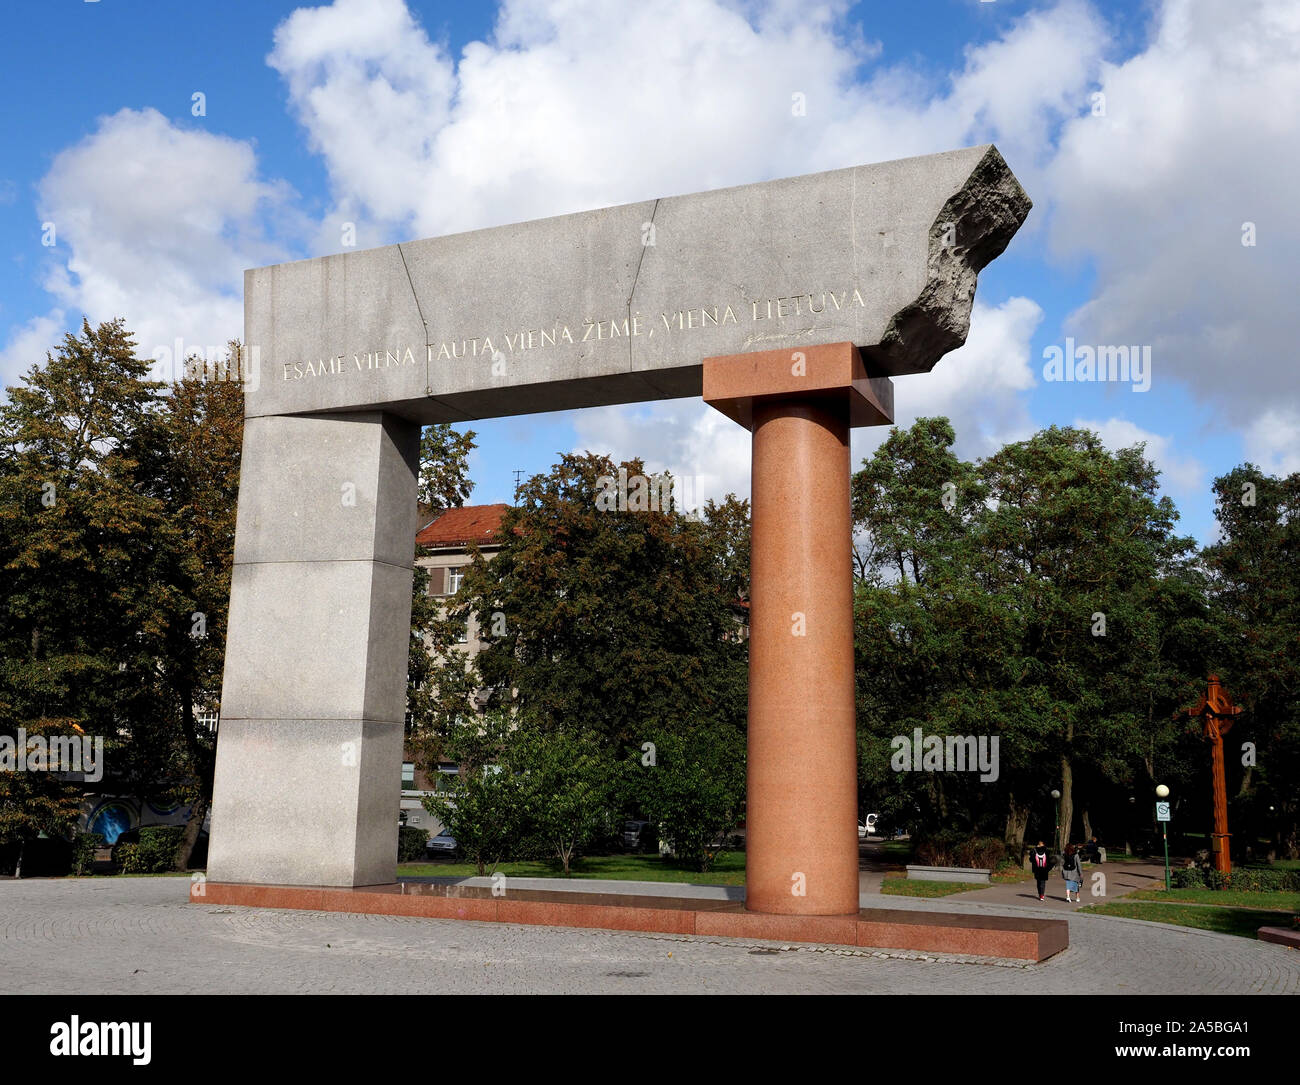 Monumento a un regno della Lituania, Klaipeda, Lituania. Il monumento di arco al regno della Lituania segna l'ottantesimo anniversario dell unificazione di Klaipeda Foto Stock